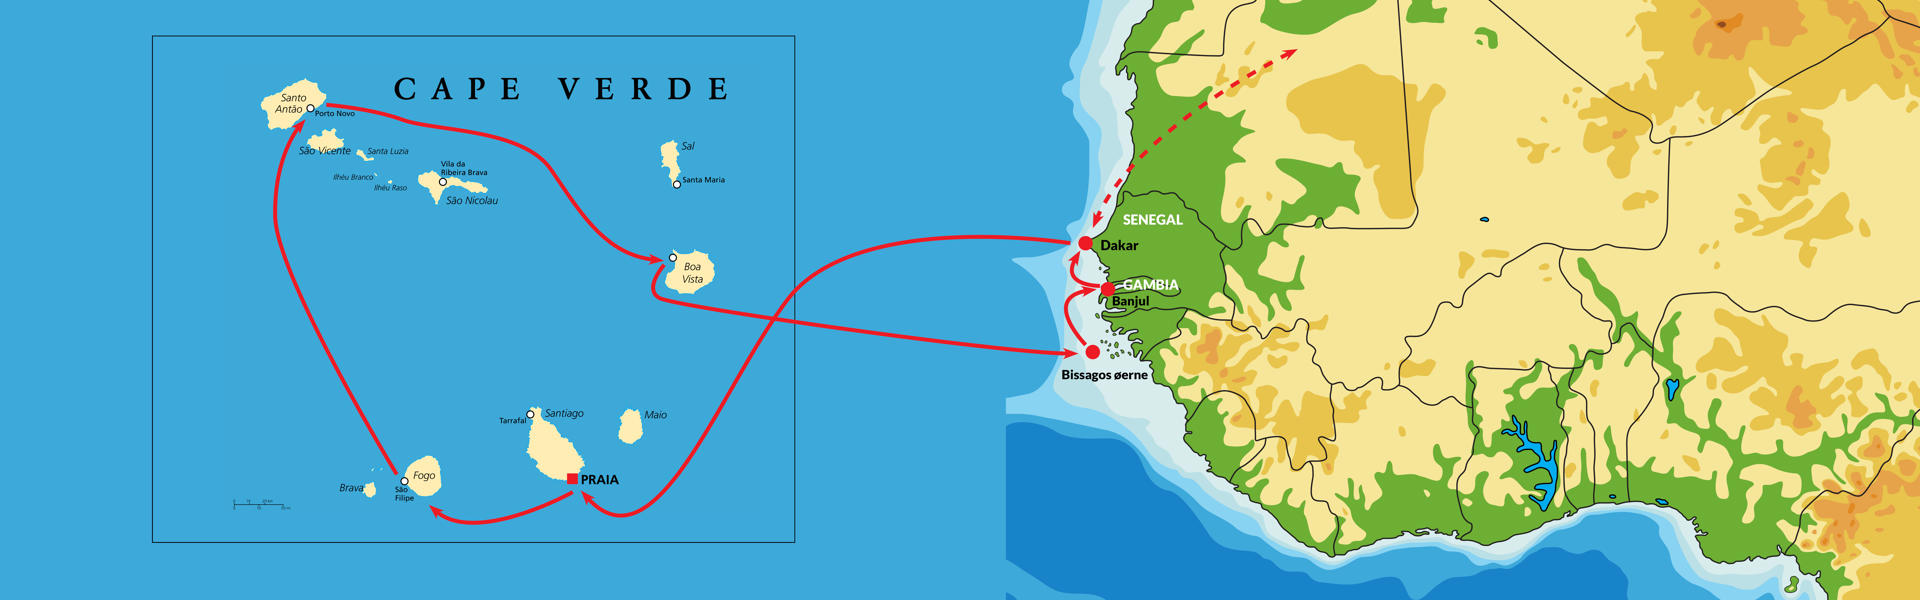 metrisk Umoderne slap af Ekspedition til Kap Verde og Bissagos | Rejs med BENNS